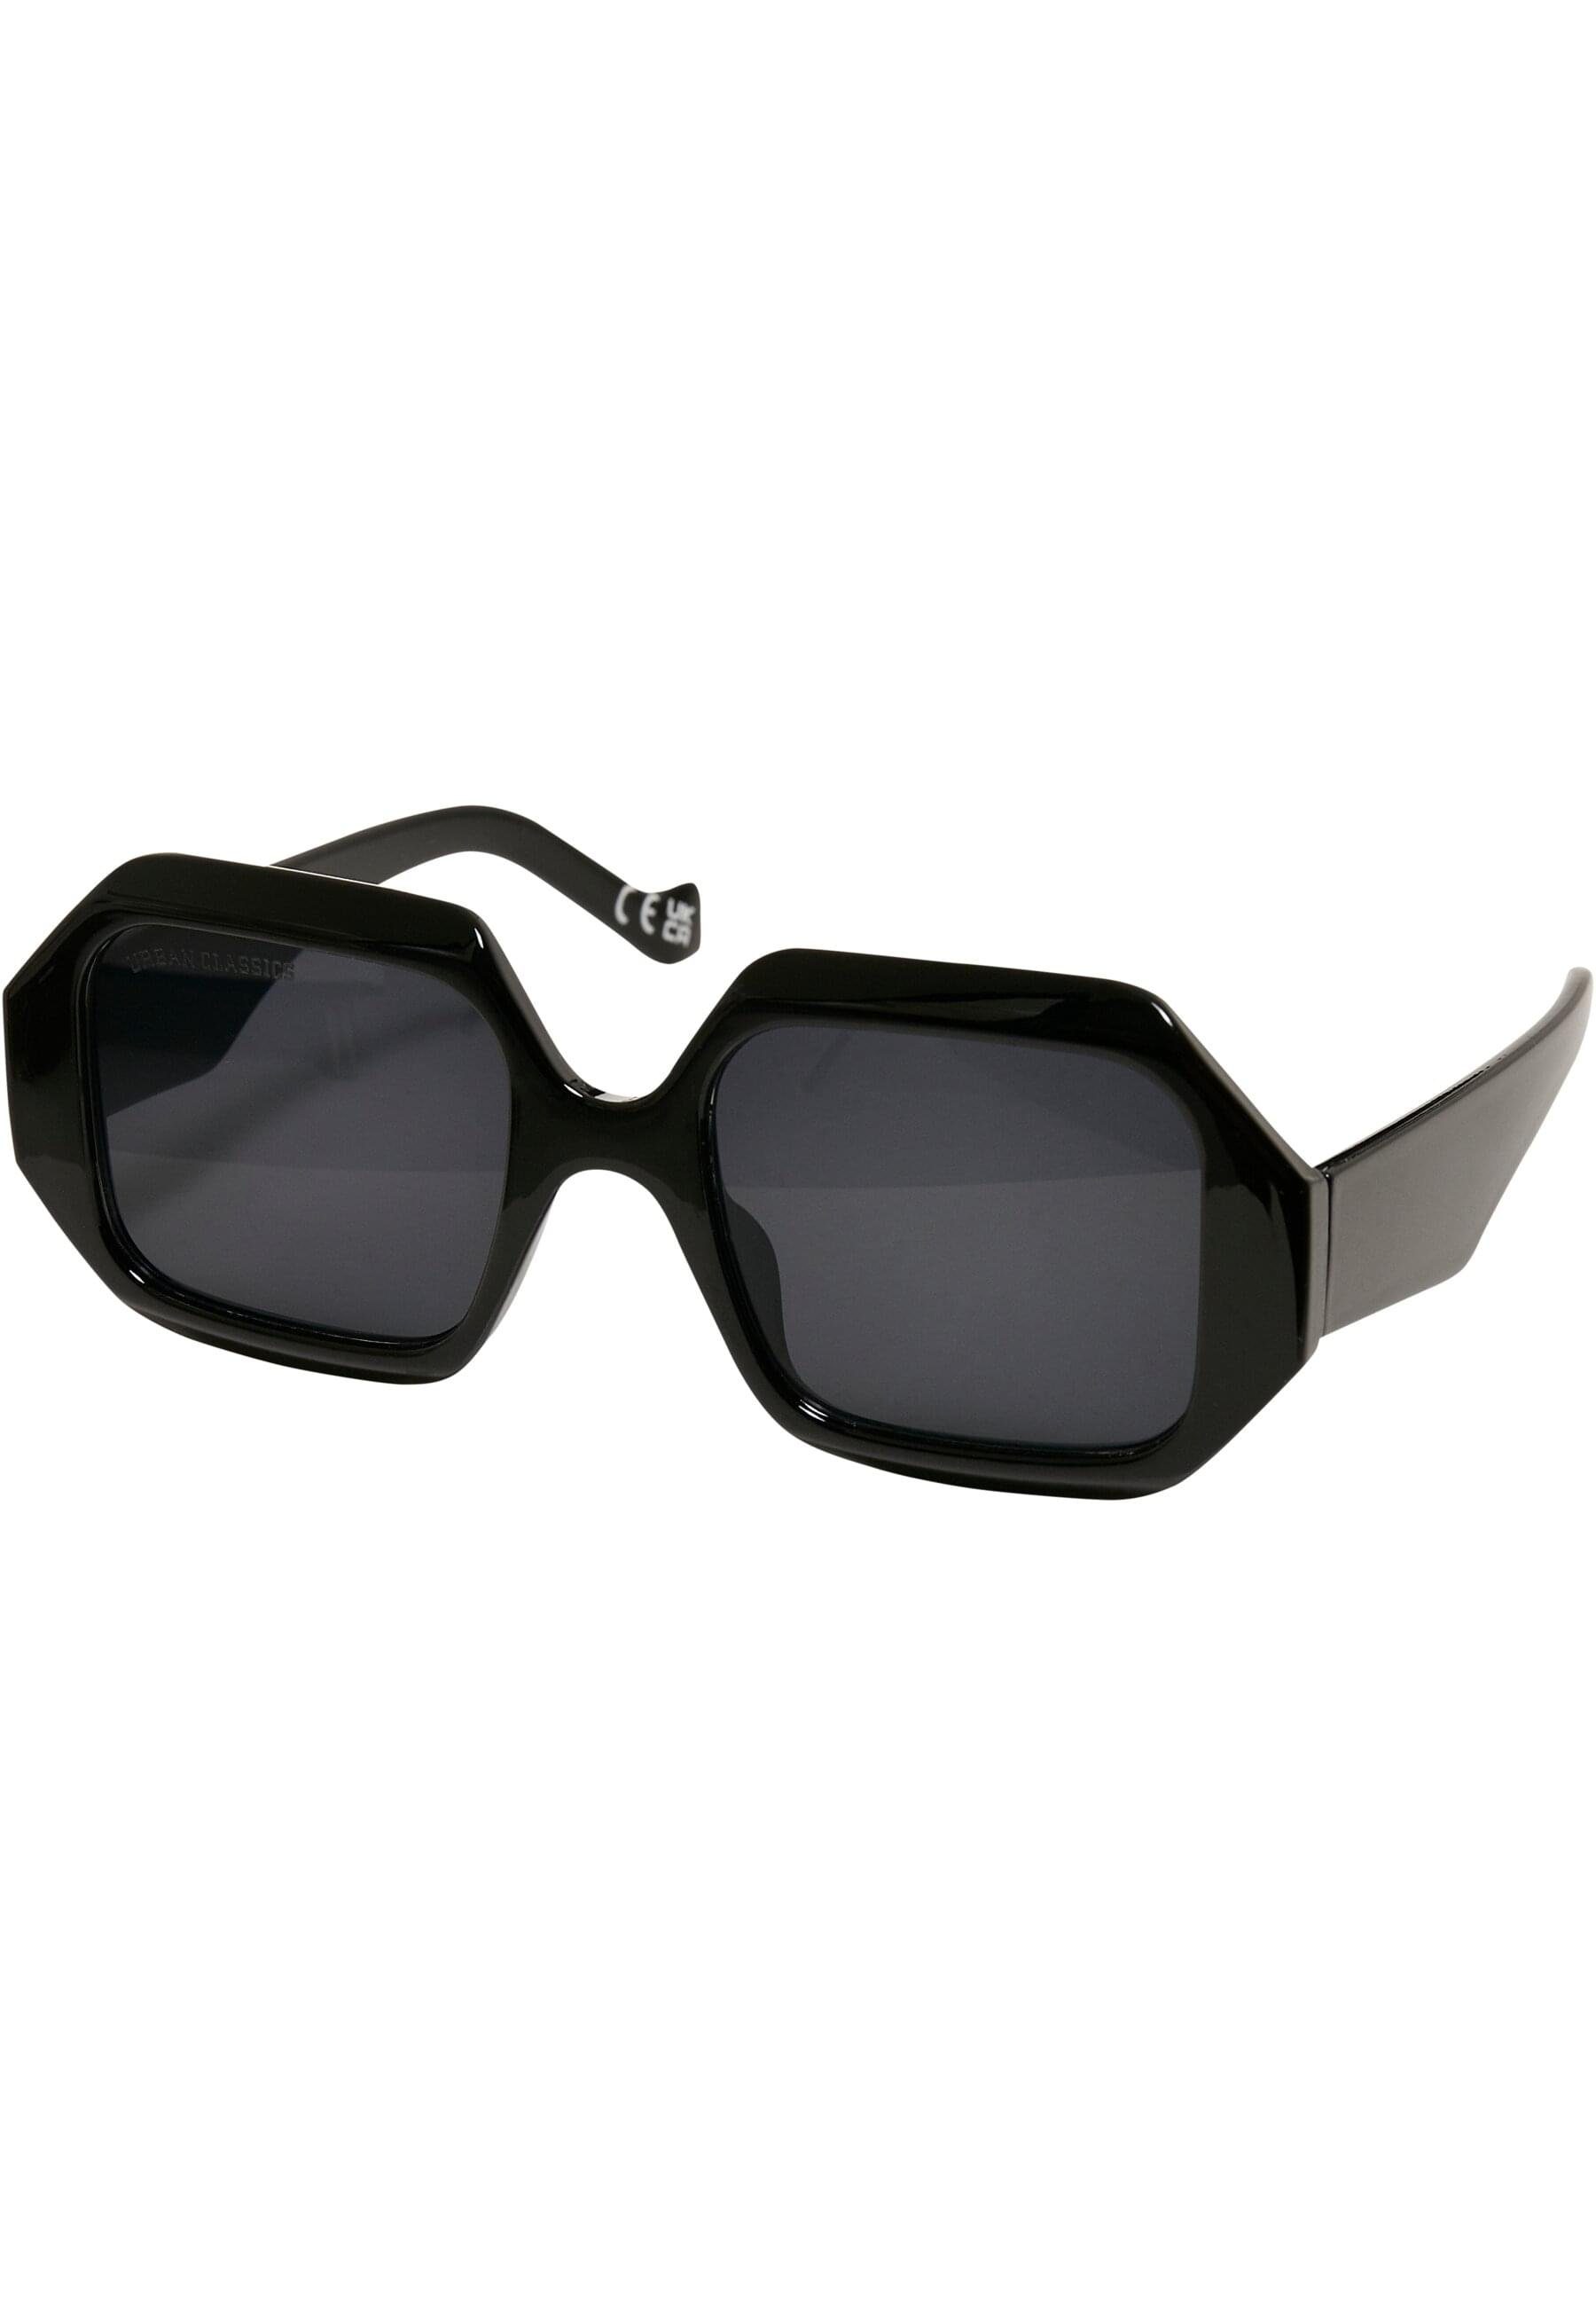 CLASSICS Rafael San URBAN Sunglasses Sonnenbrille Unisex